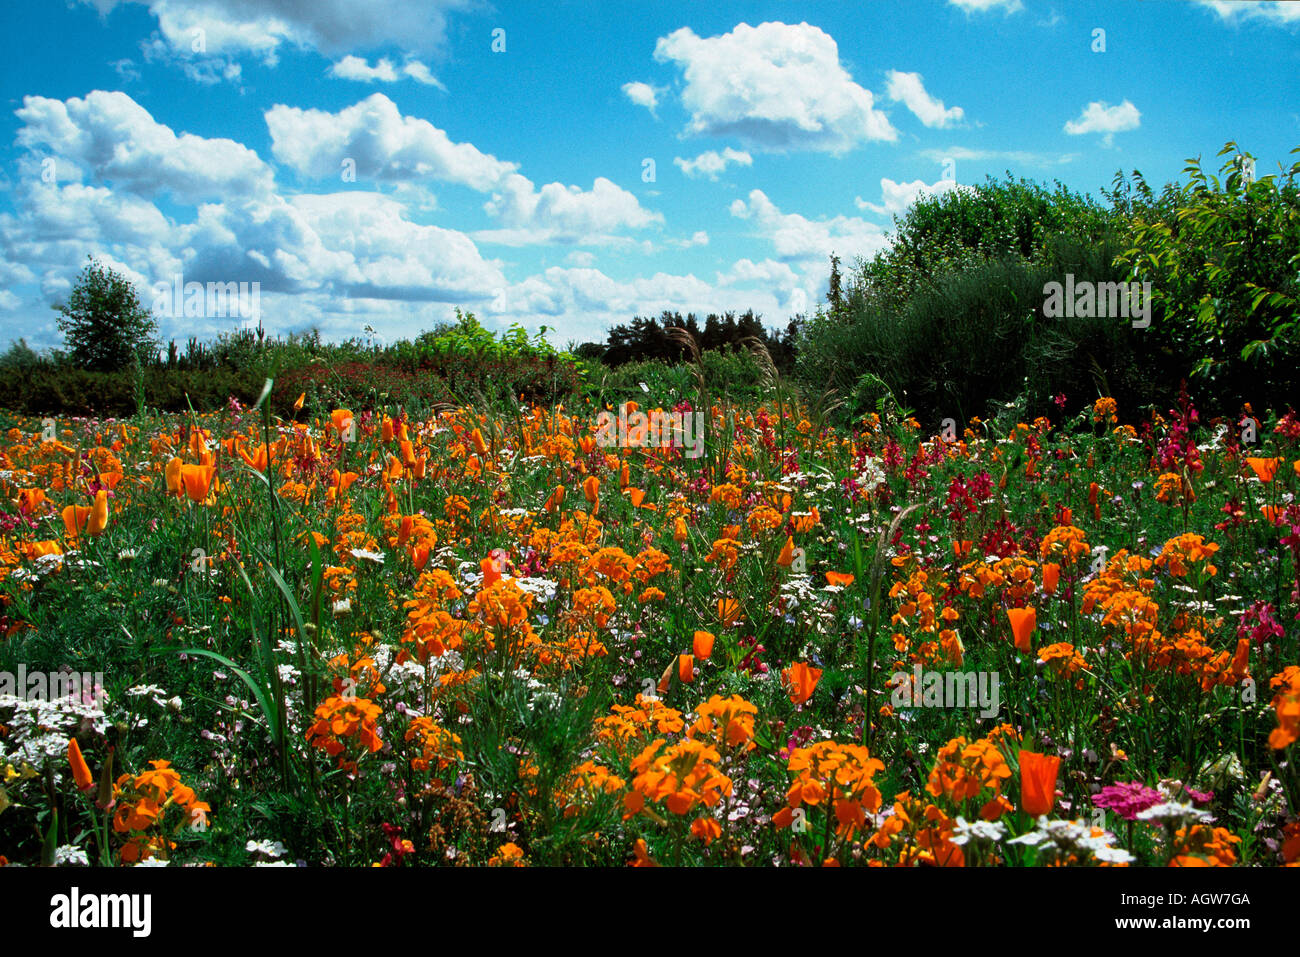 Flower meadow / Blumenwiese Stock Photo